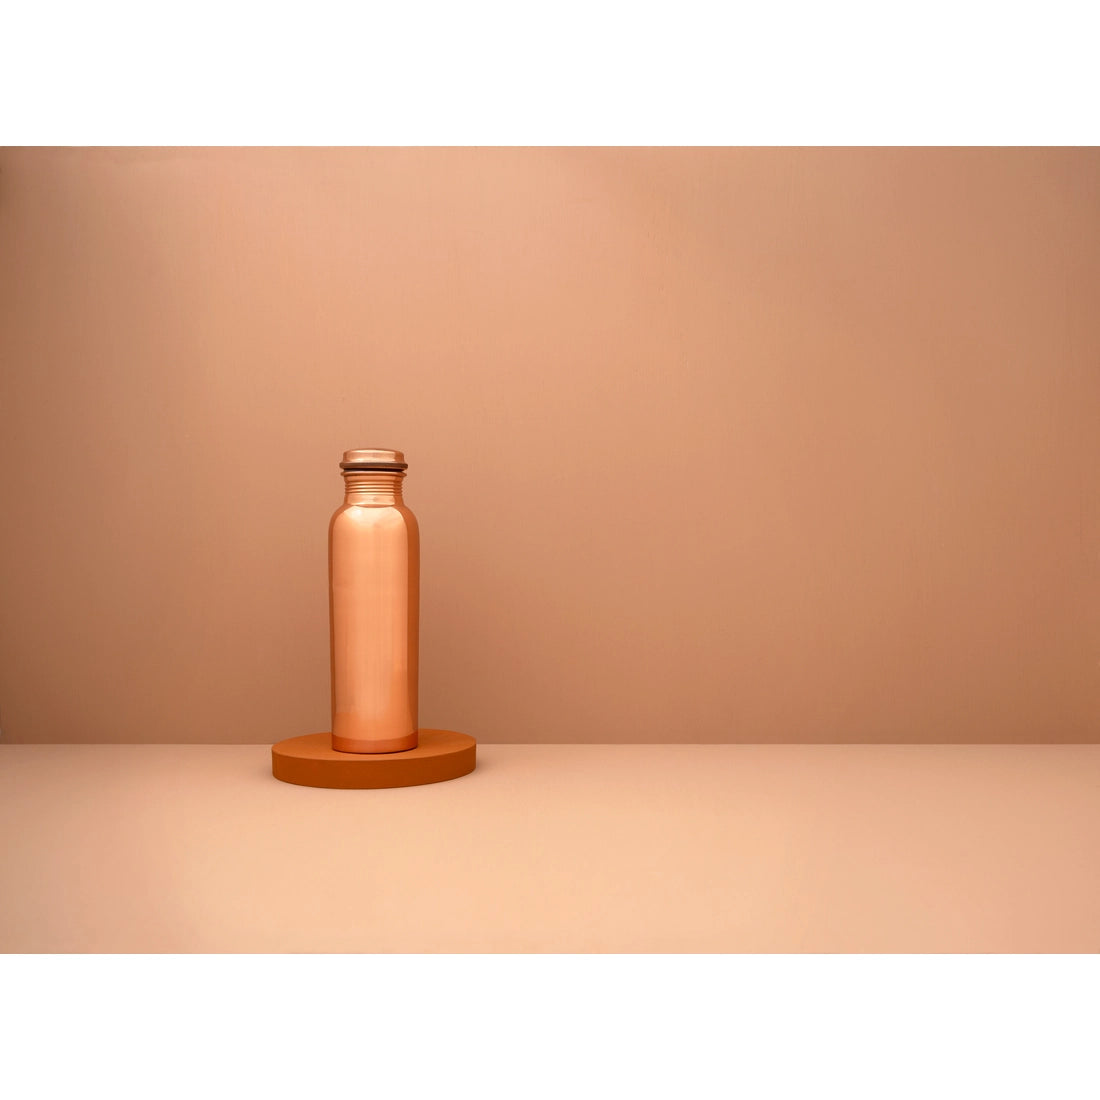 Tamra Ayurvedic Copper Water Bottle